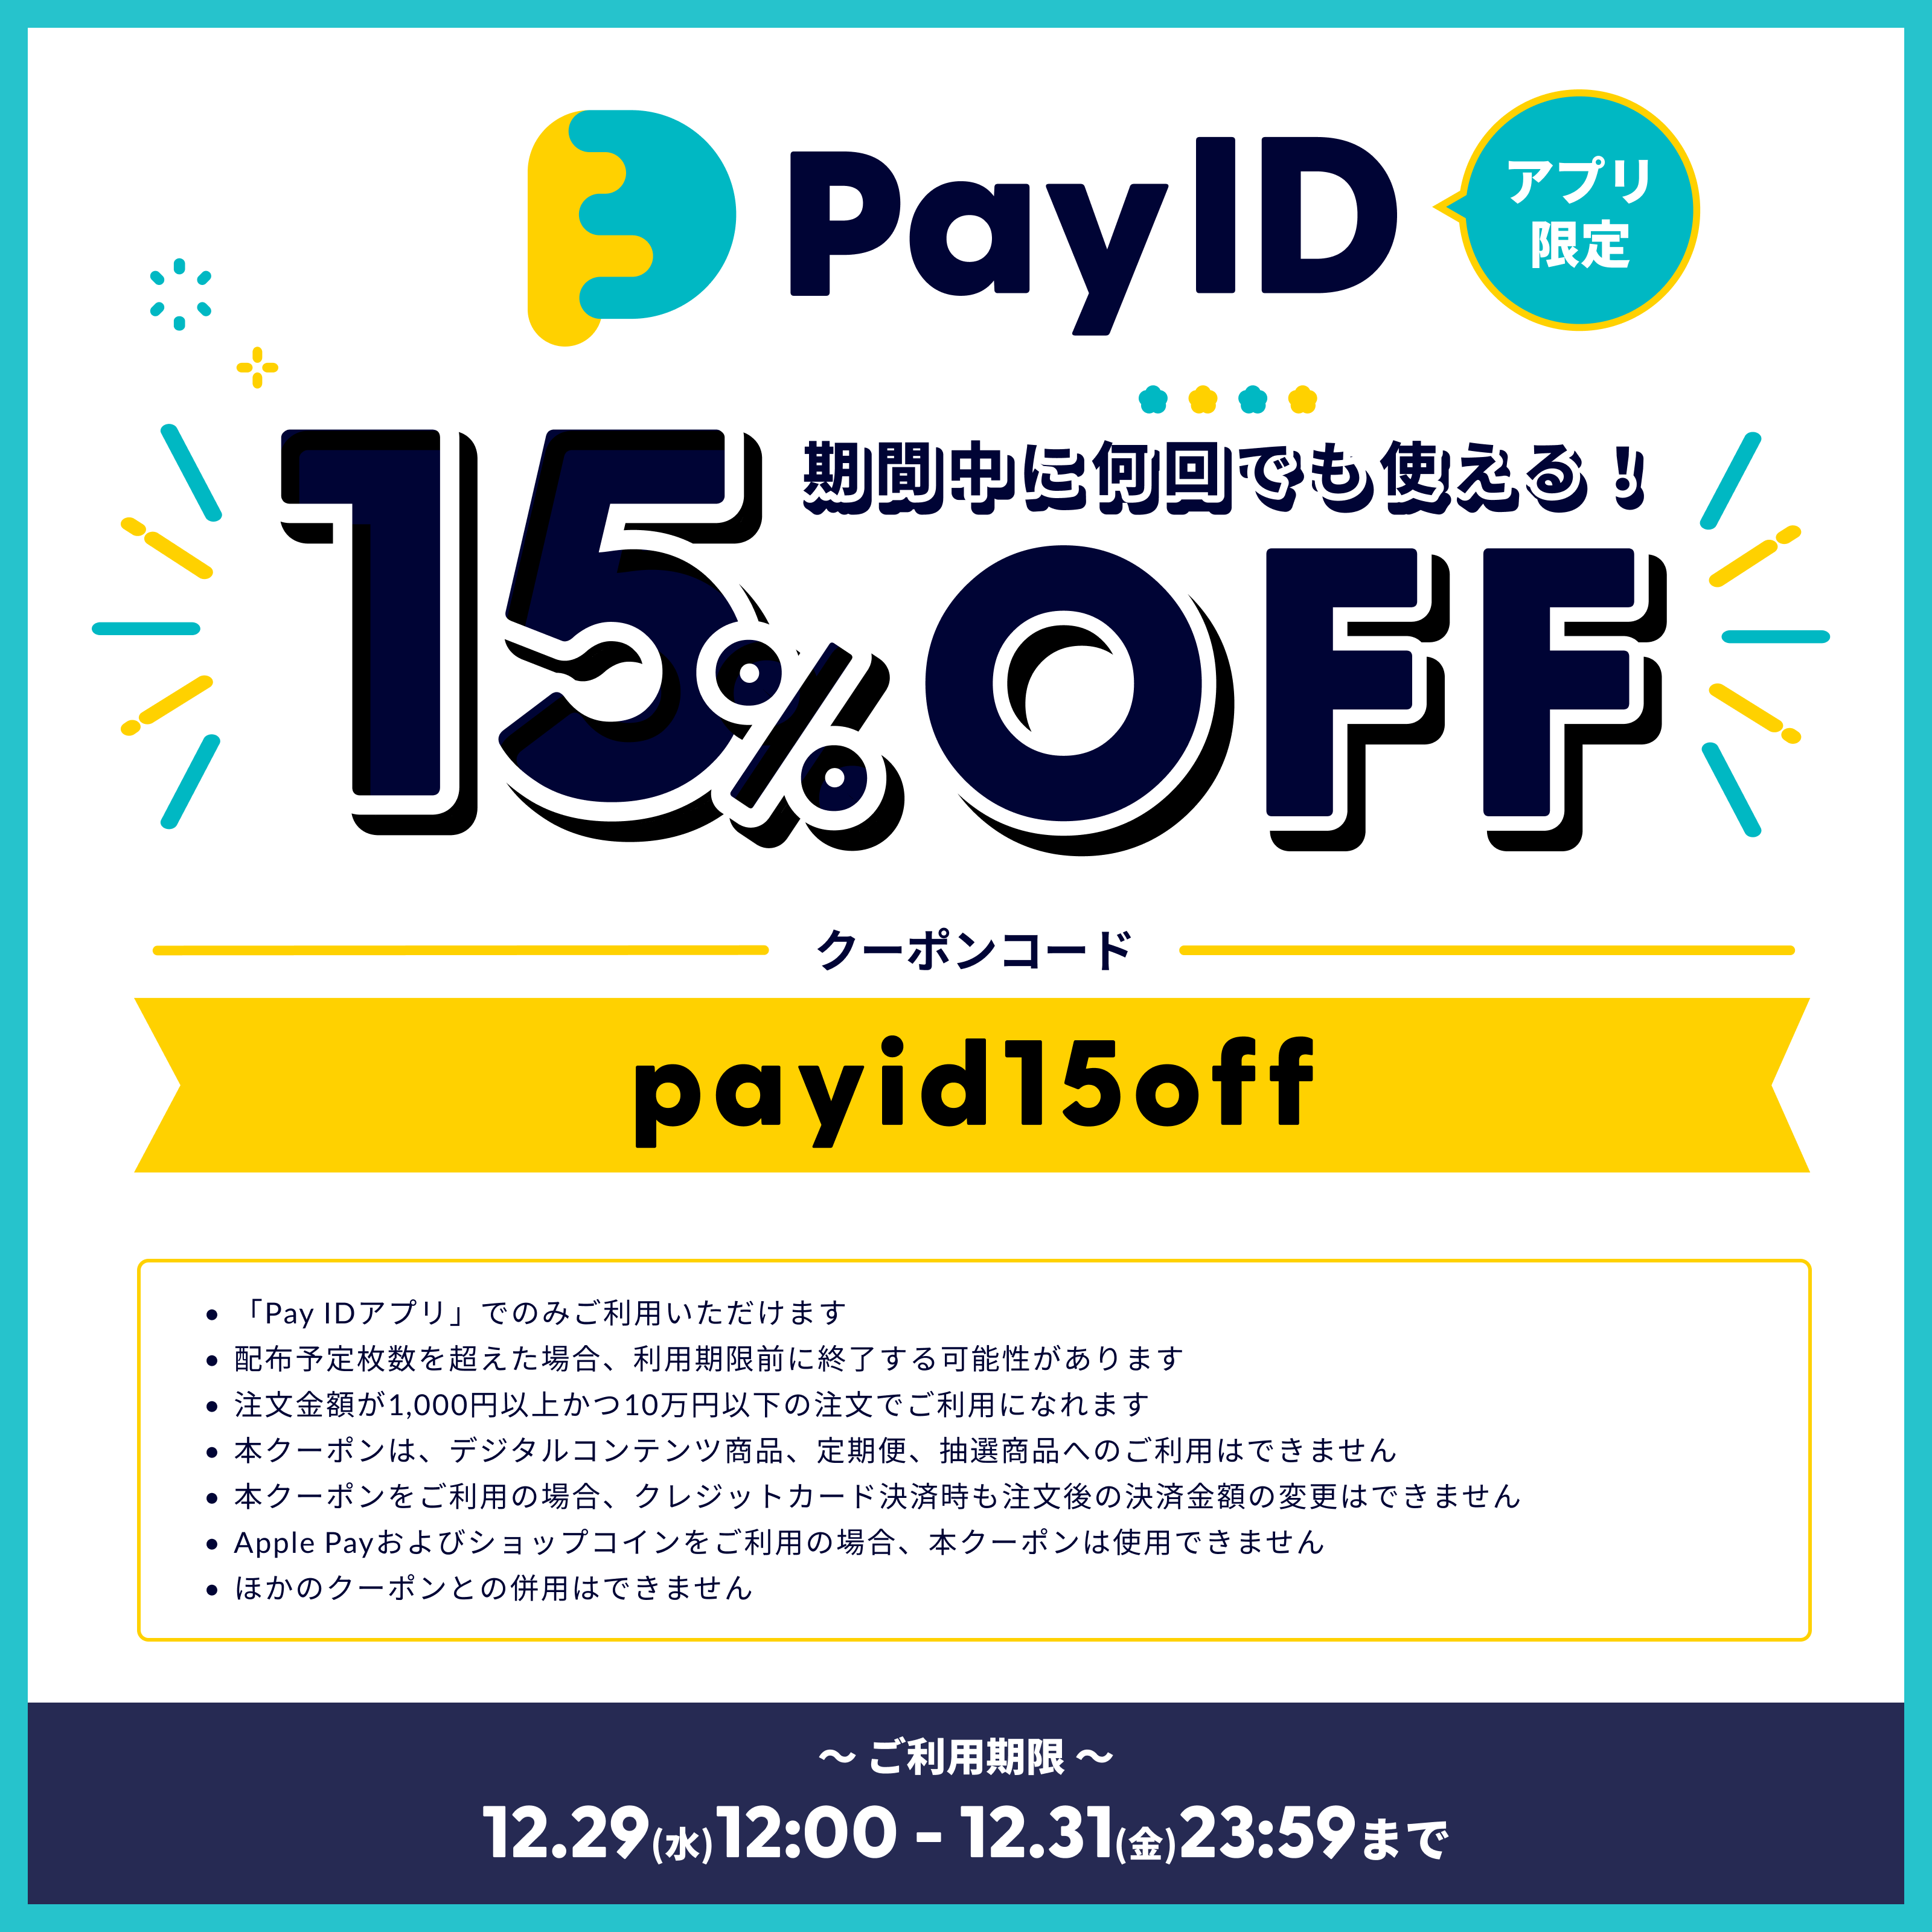 Pay IDリニューアルキャンペーン第2弾 のご紹介です！！